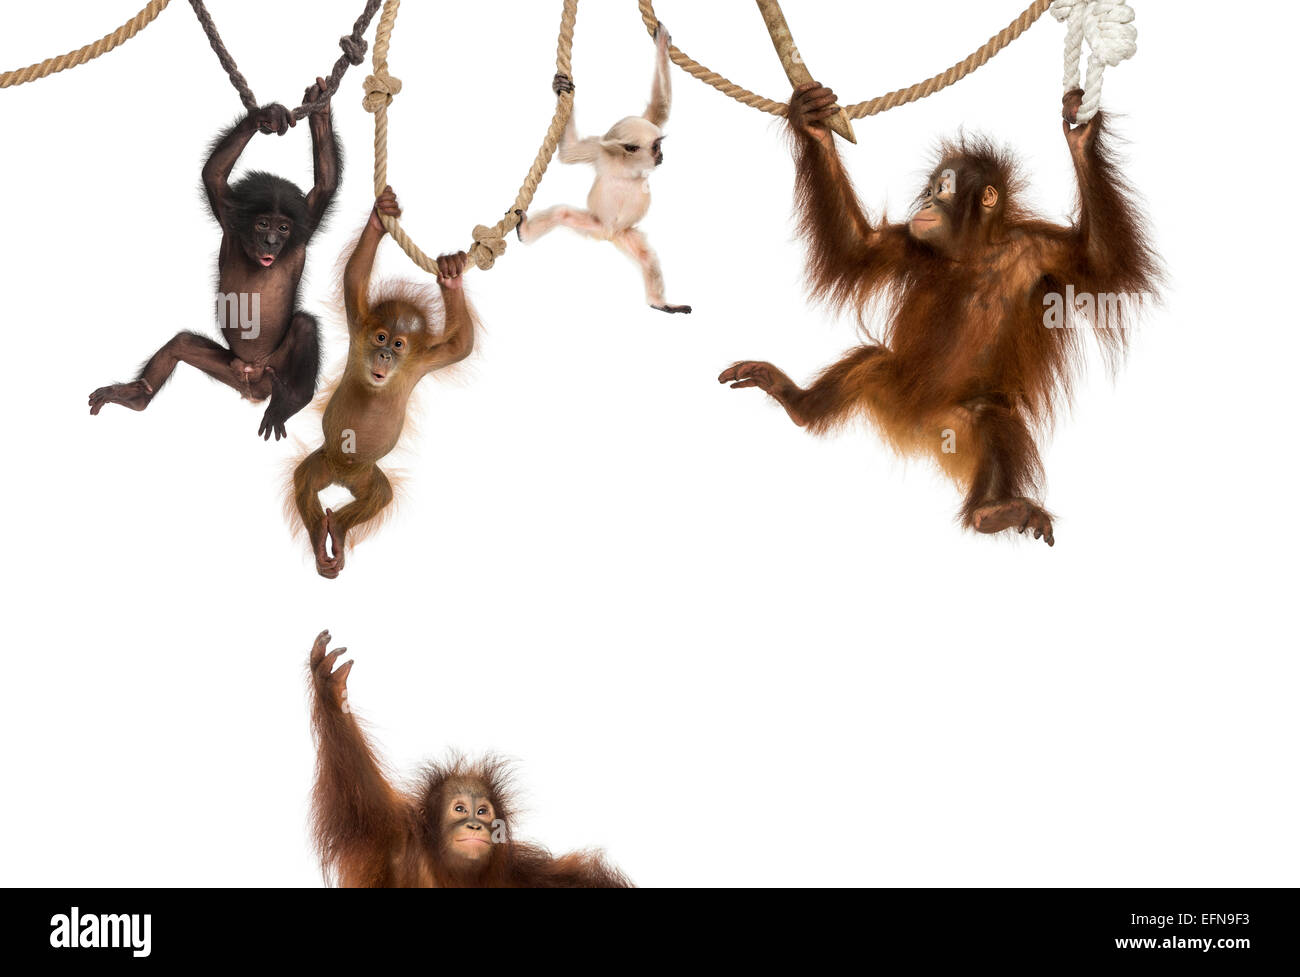 Les jeunes orang-outan, jeune grand Gibbon et les jeunes sur des cordes suspendues Bonobo against white background Banque D'Images